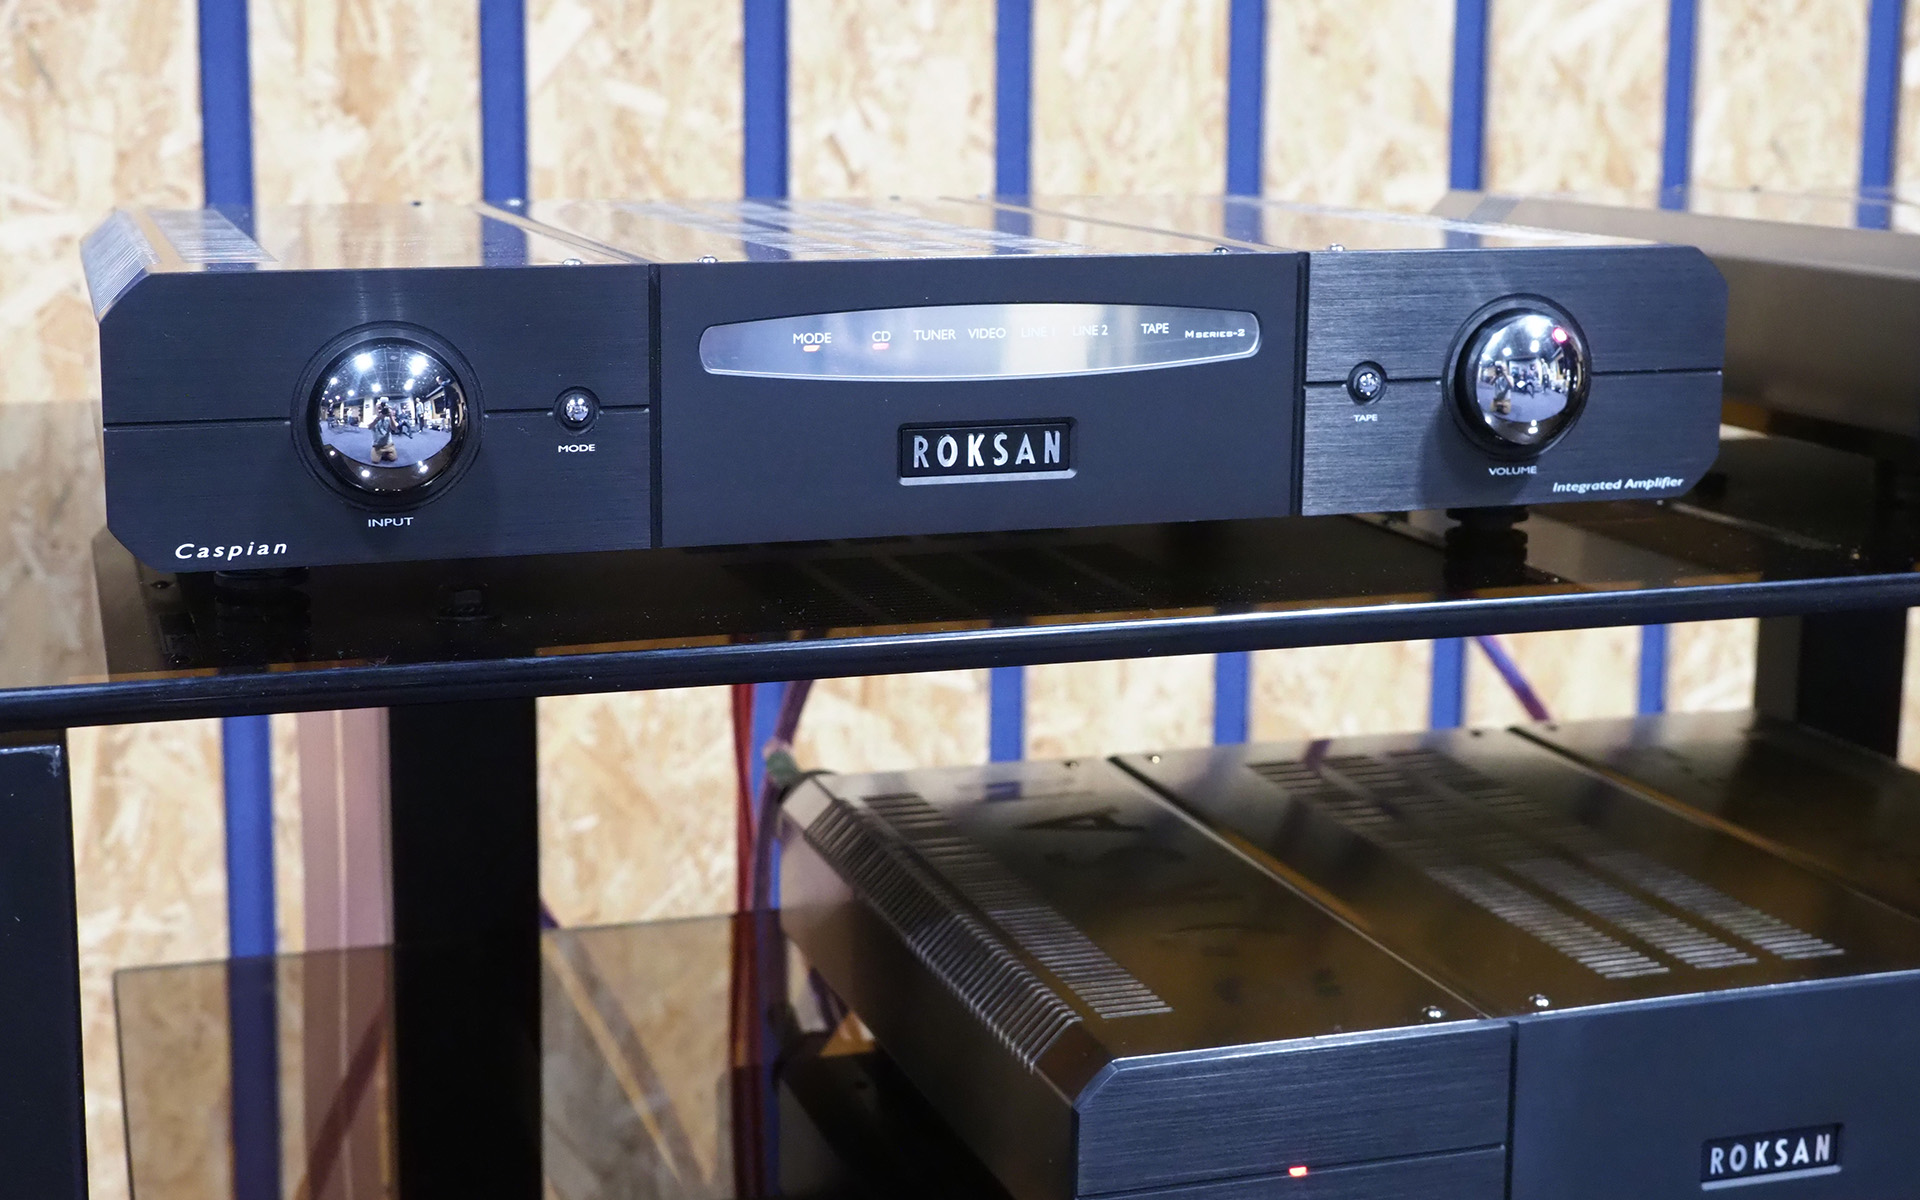 В России стартовали продажи акустики Monitor Audio Gold пятого поколения и компонентов Roksan